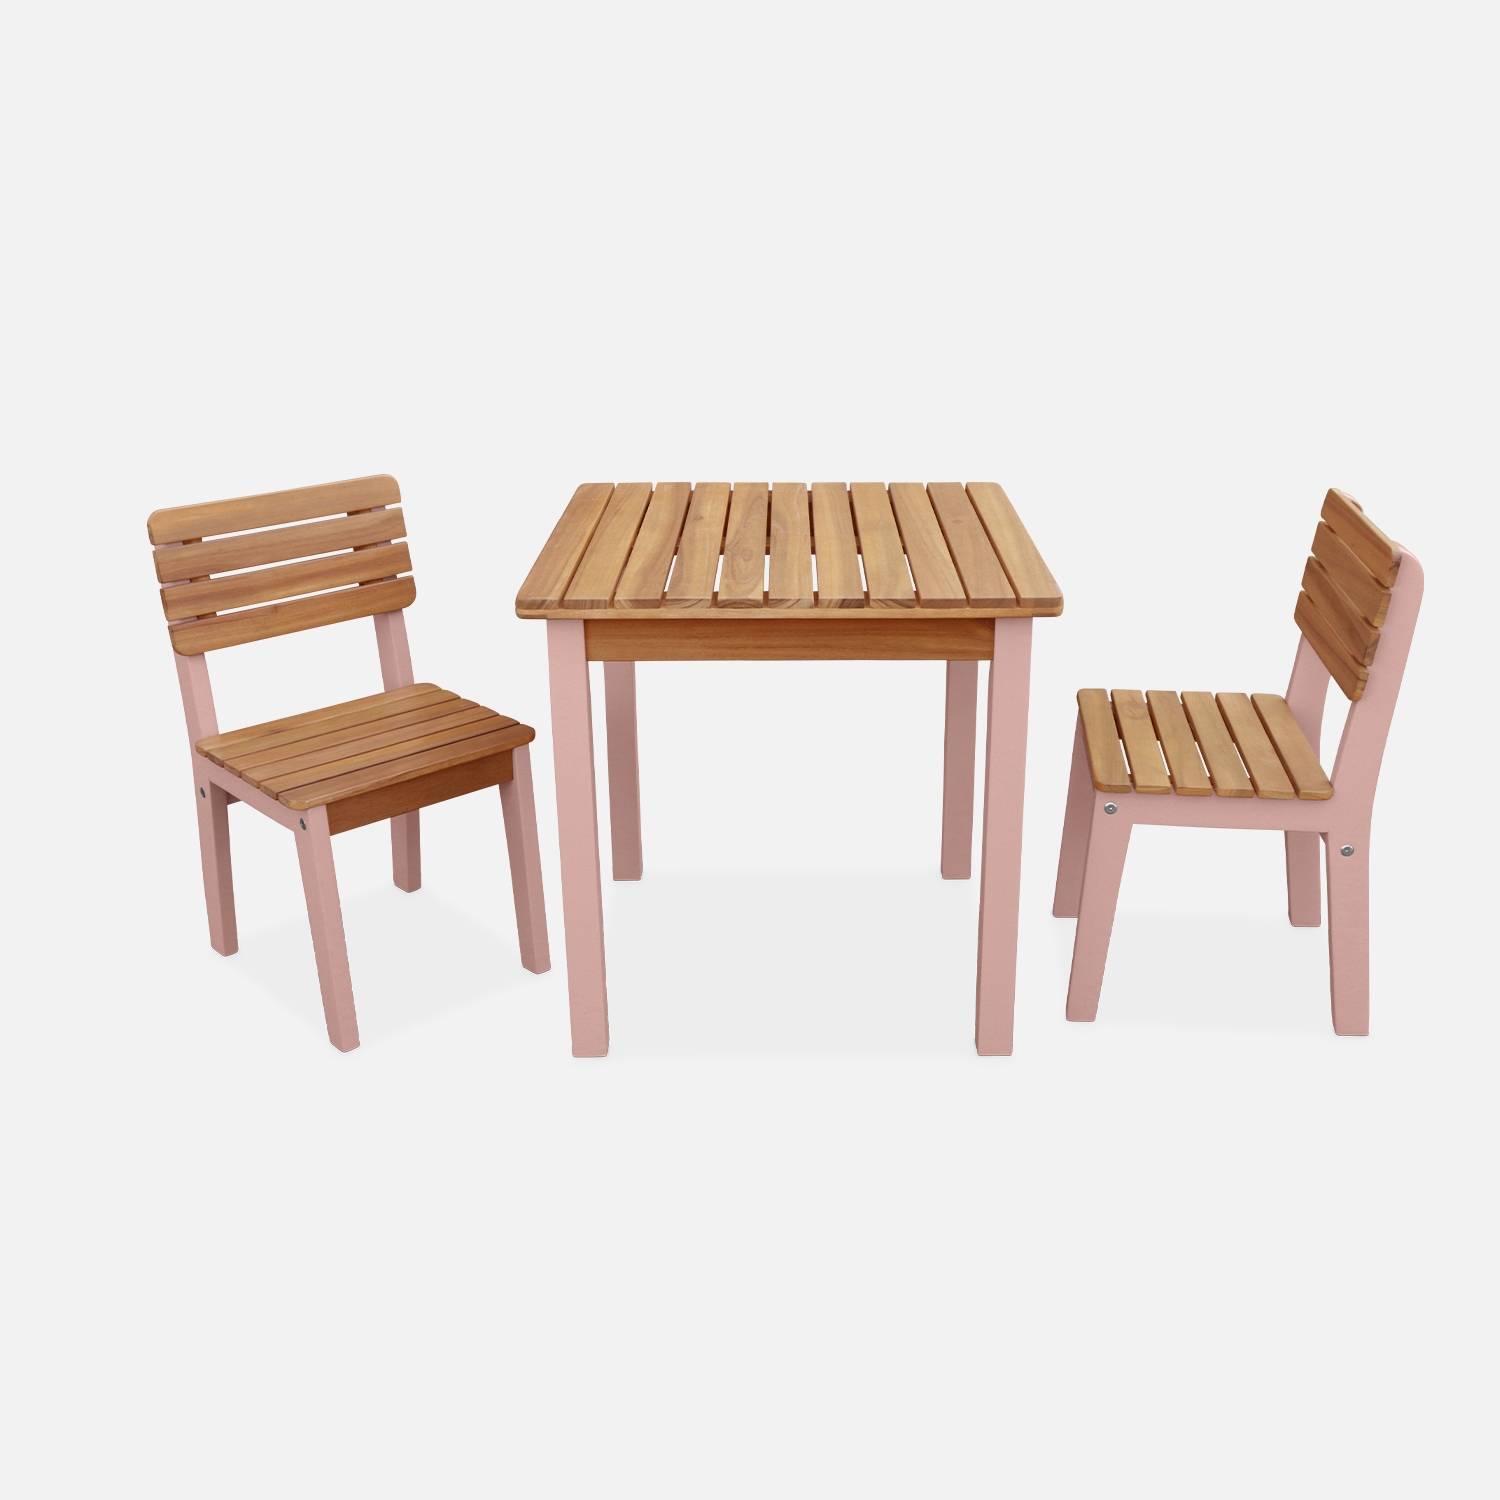 Kindertisch mit 2 Stühlen aus Holz, rosa I sweeek